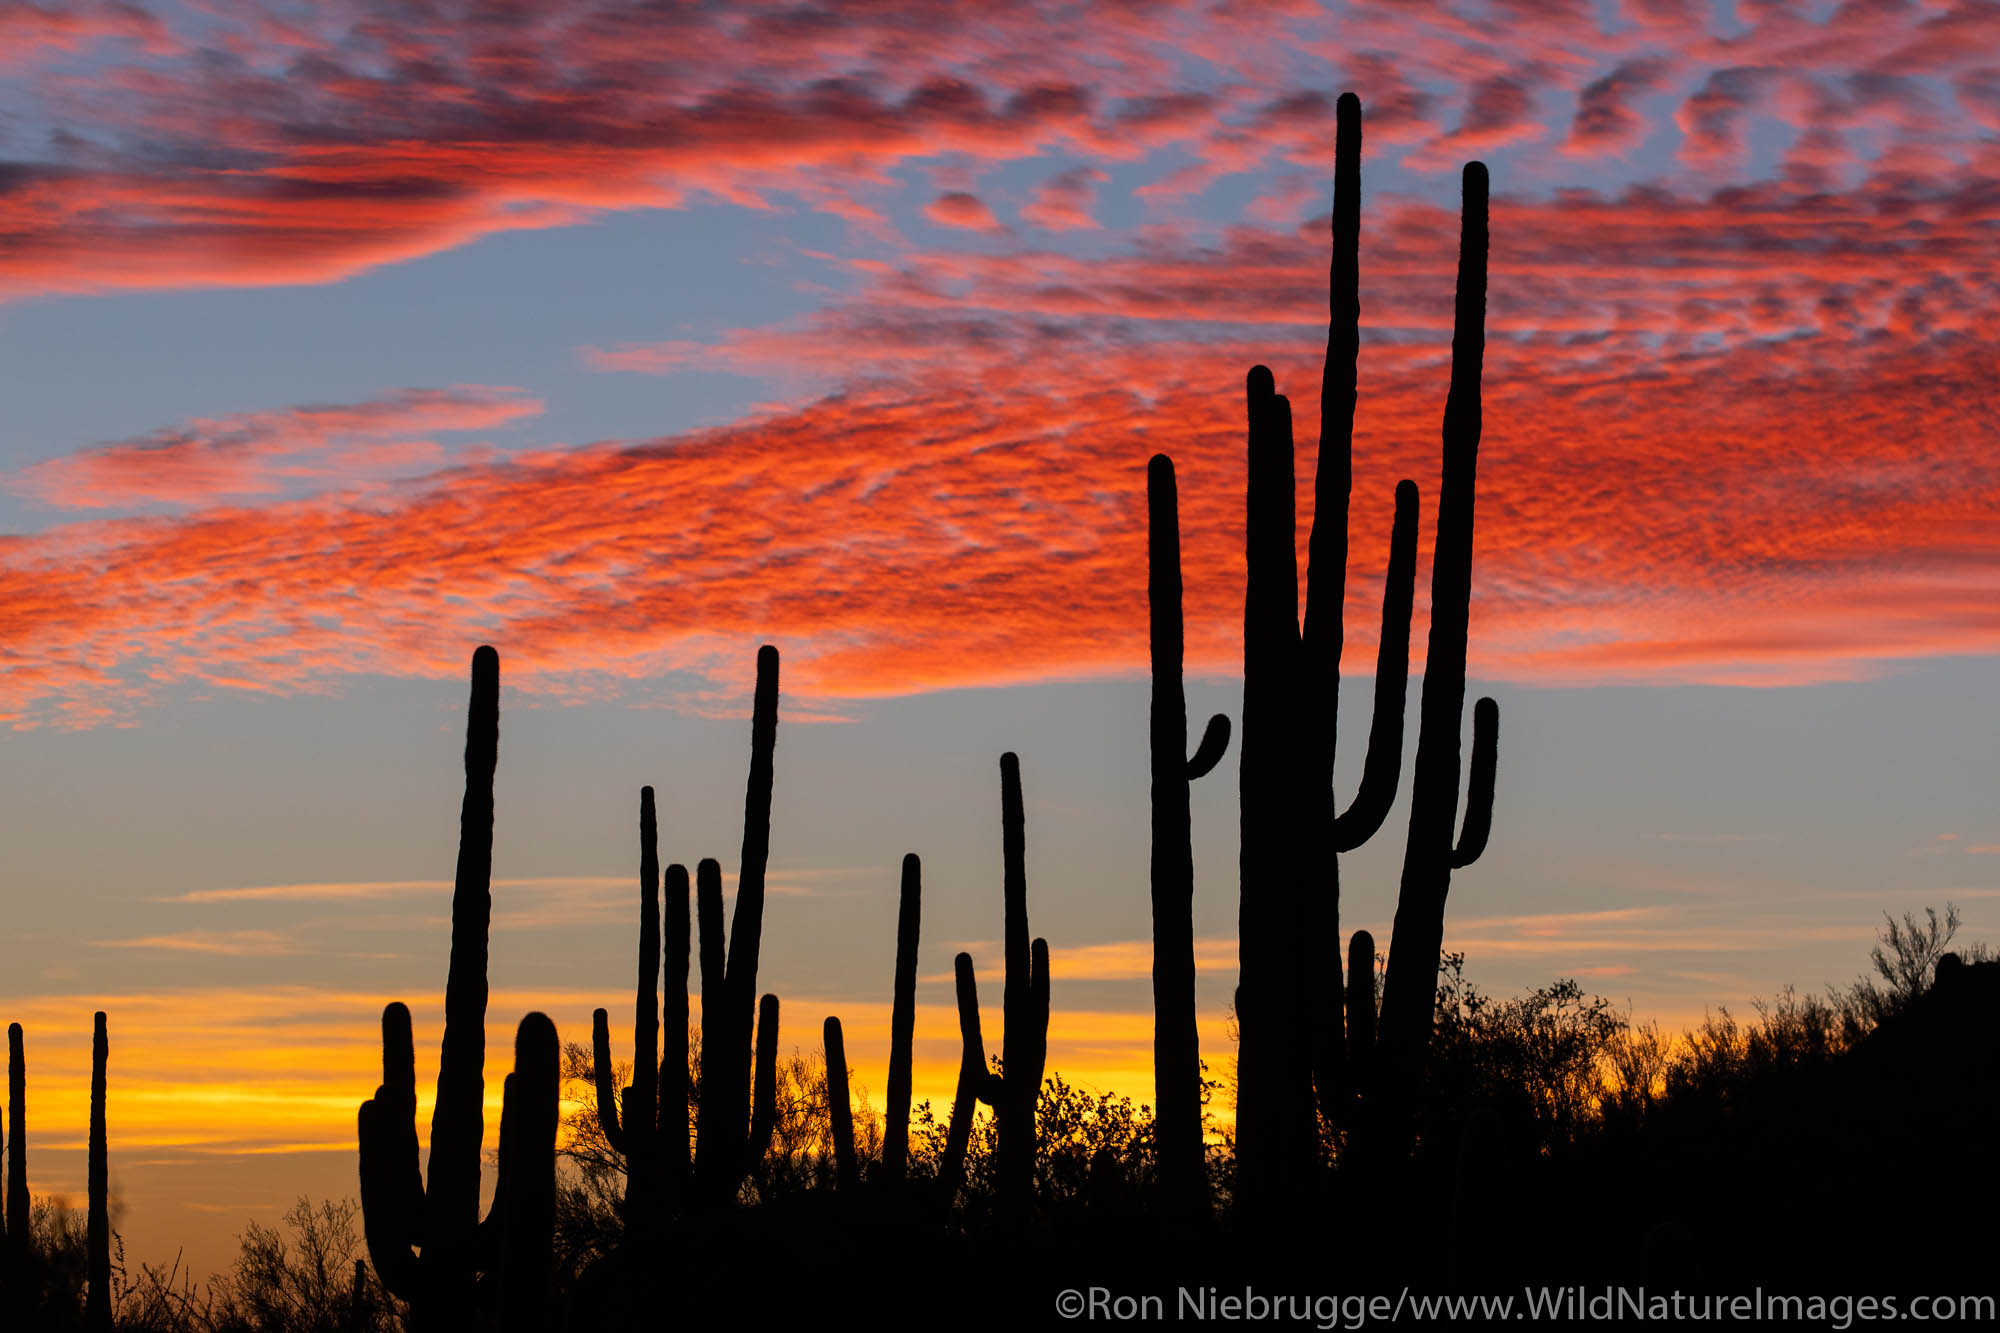 Tortolita Mountains sunset, Marana, near Tucson, Arizona.